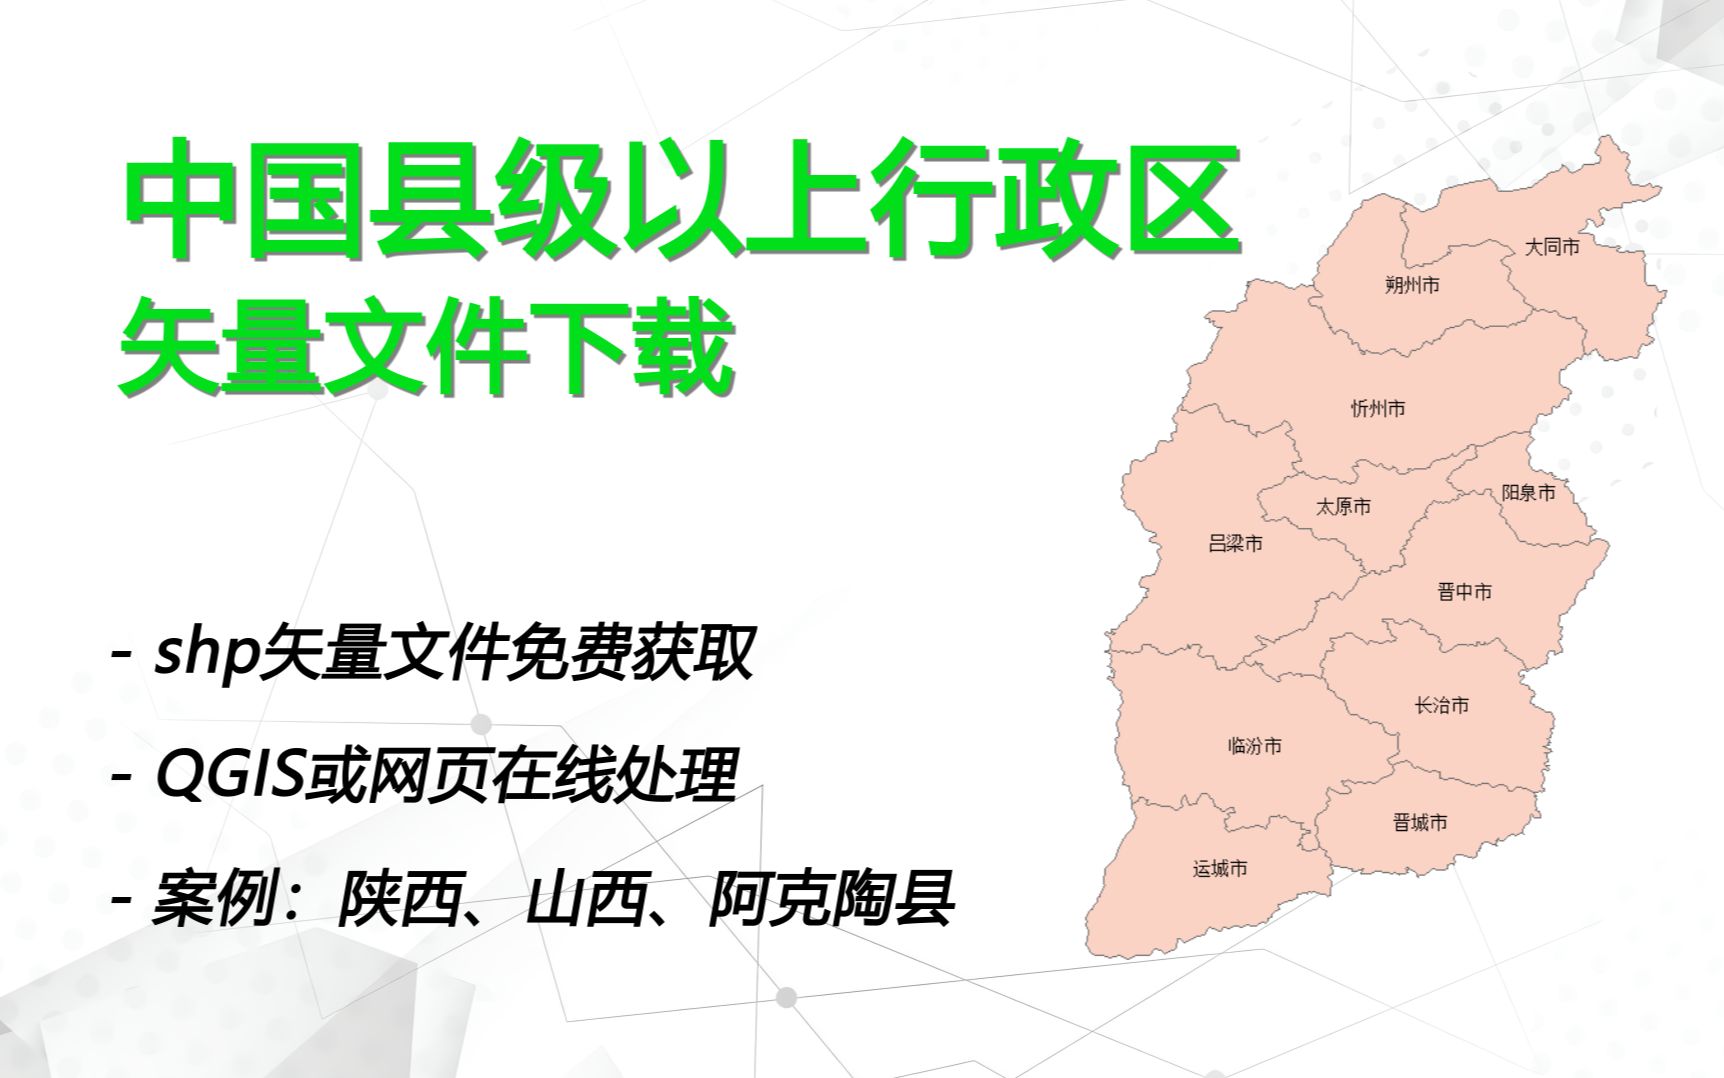 中国任意县级以上行政边界矢量数据免费下载、处理